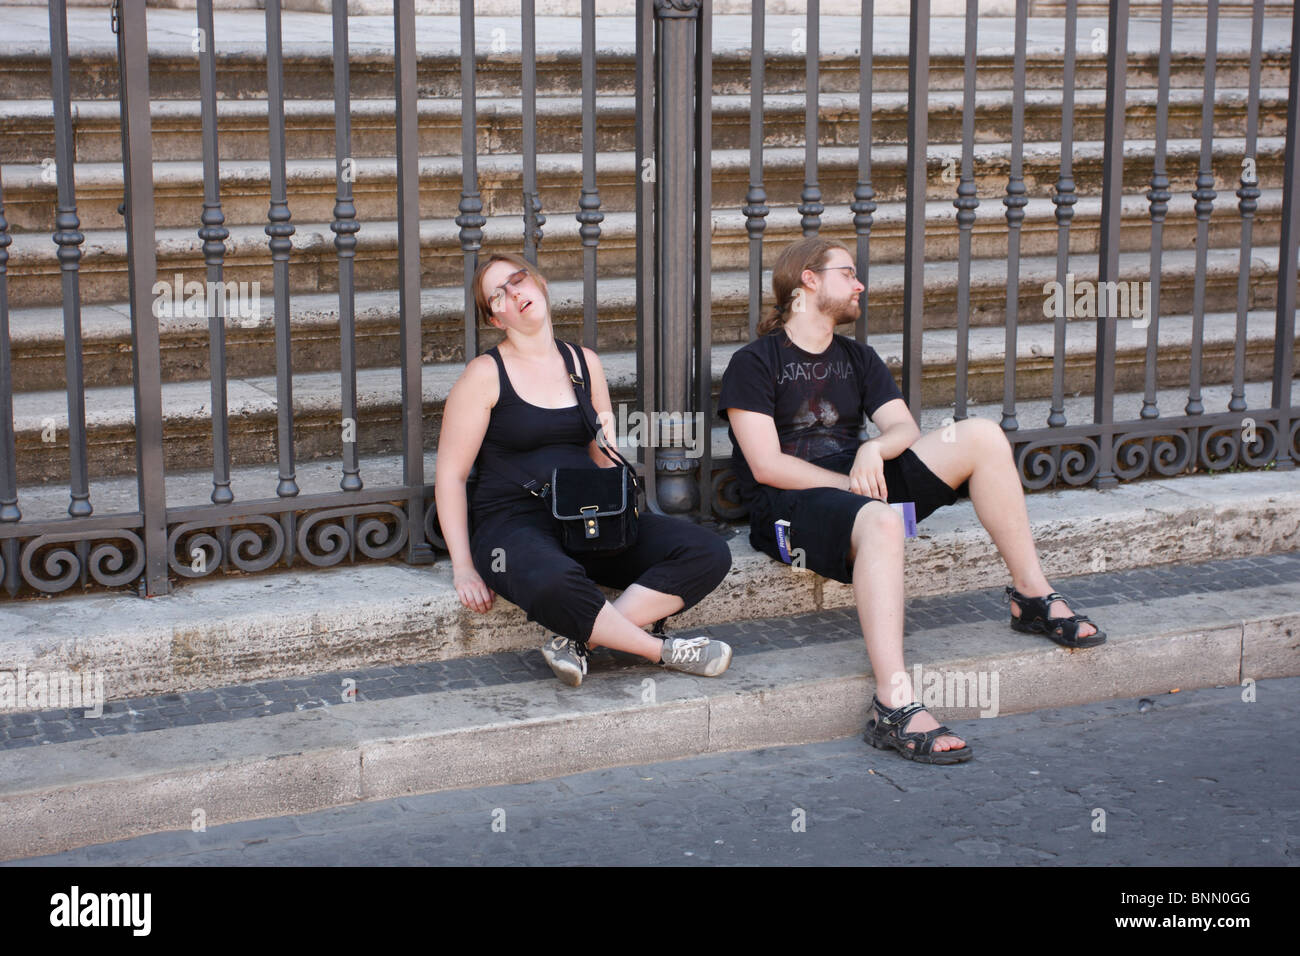 Le repos, les touristes fatigués à Rome, Italie Banque D'Images